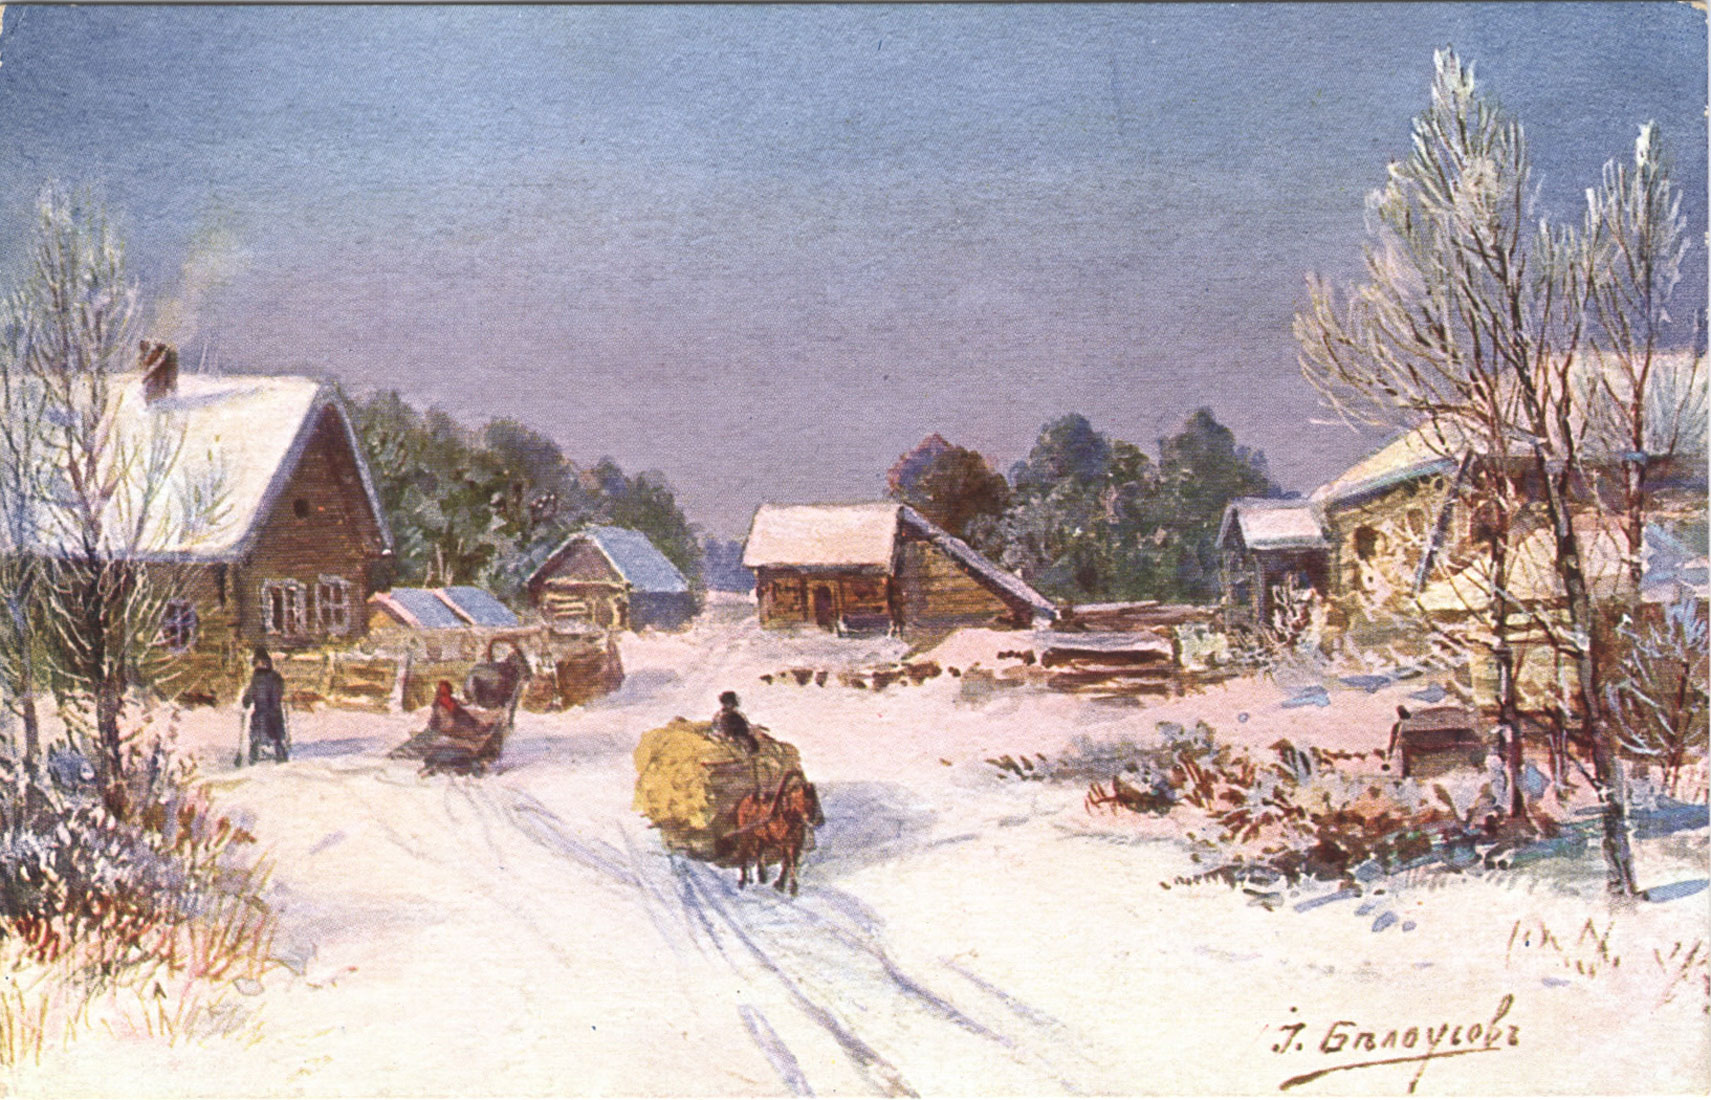 [Деревенская улица зимой : открытка]. - [Stockholm] : E. G. S. i. S., [между 1904 и 1917] . - Цветная автотипия ; 8,8х13,8 см.